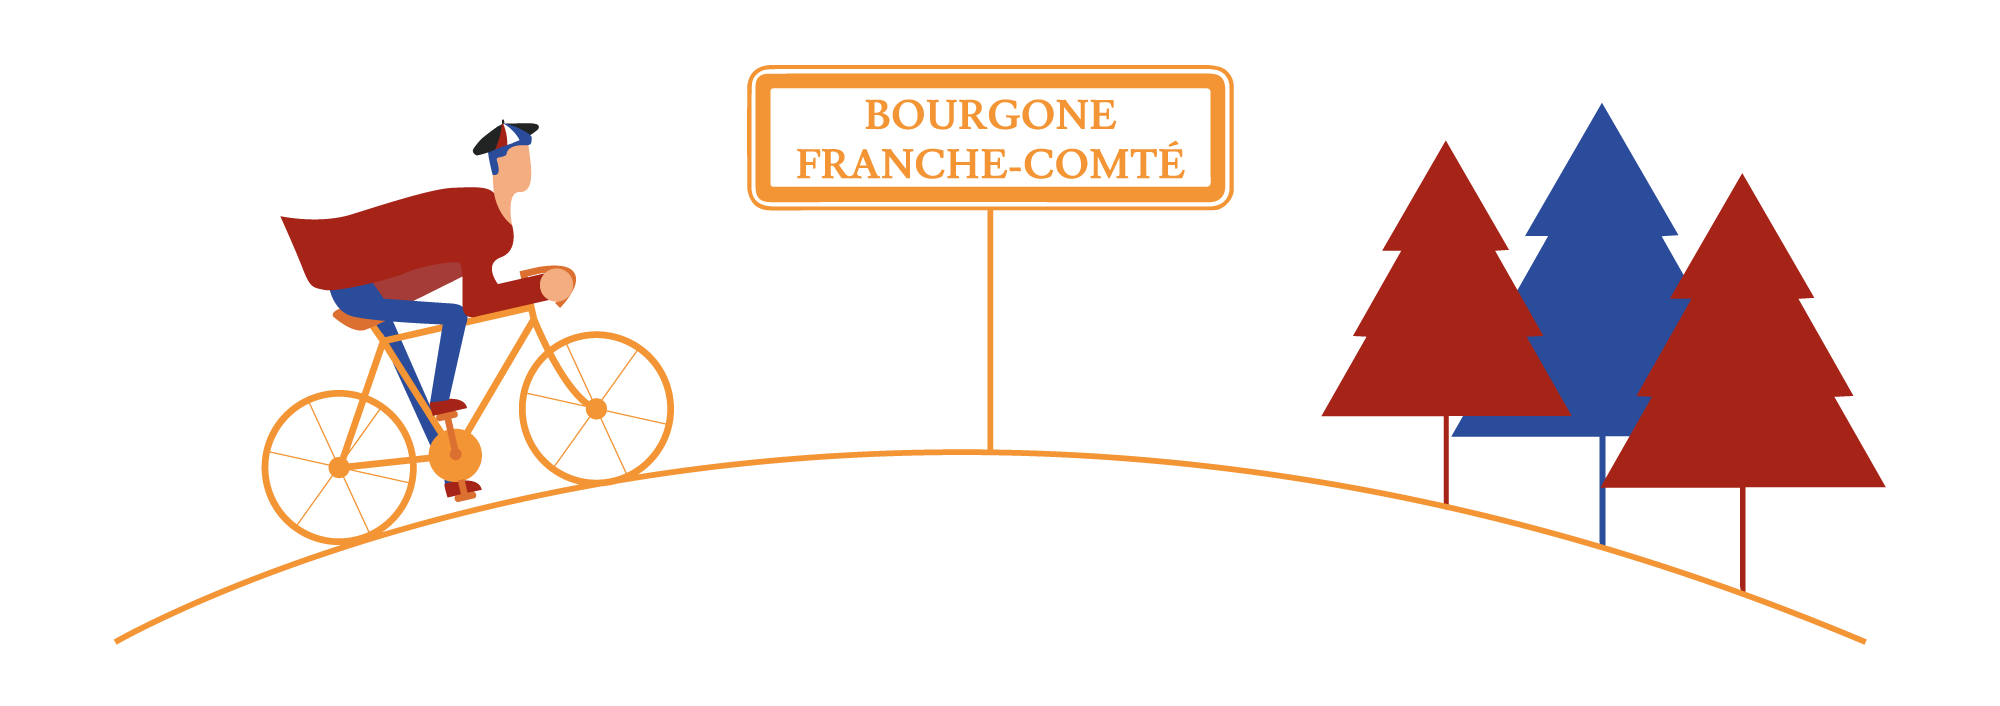 Spécialités de Bourgogne-Franche-Comté